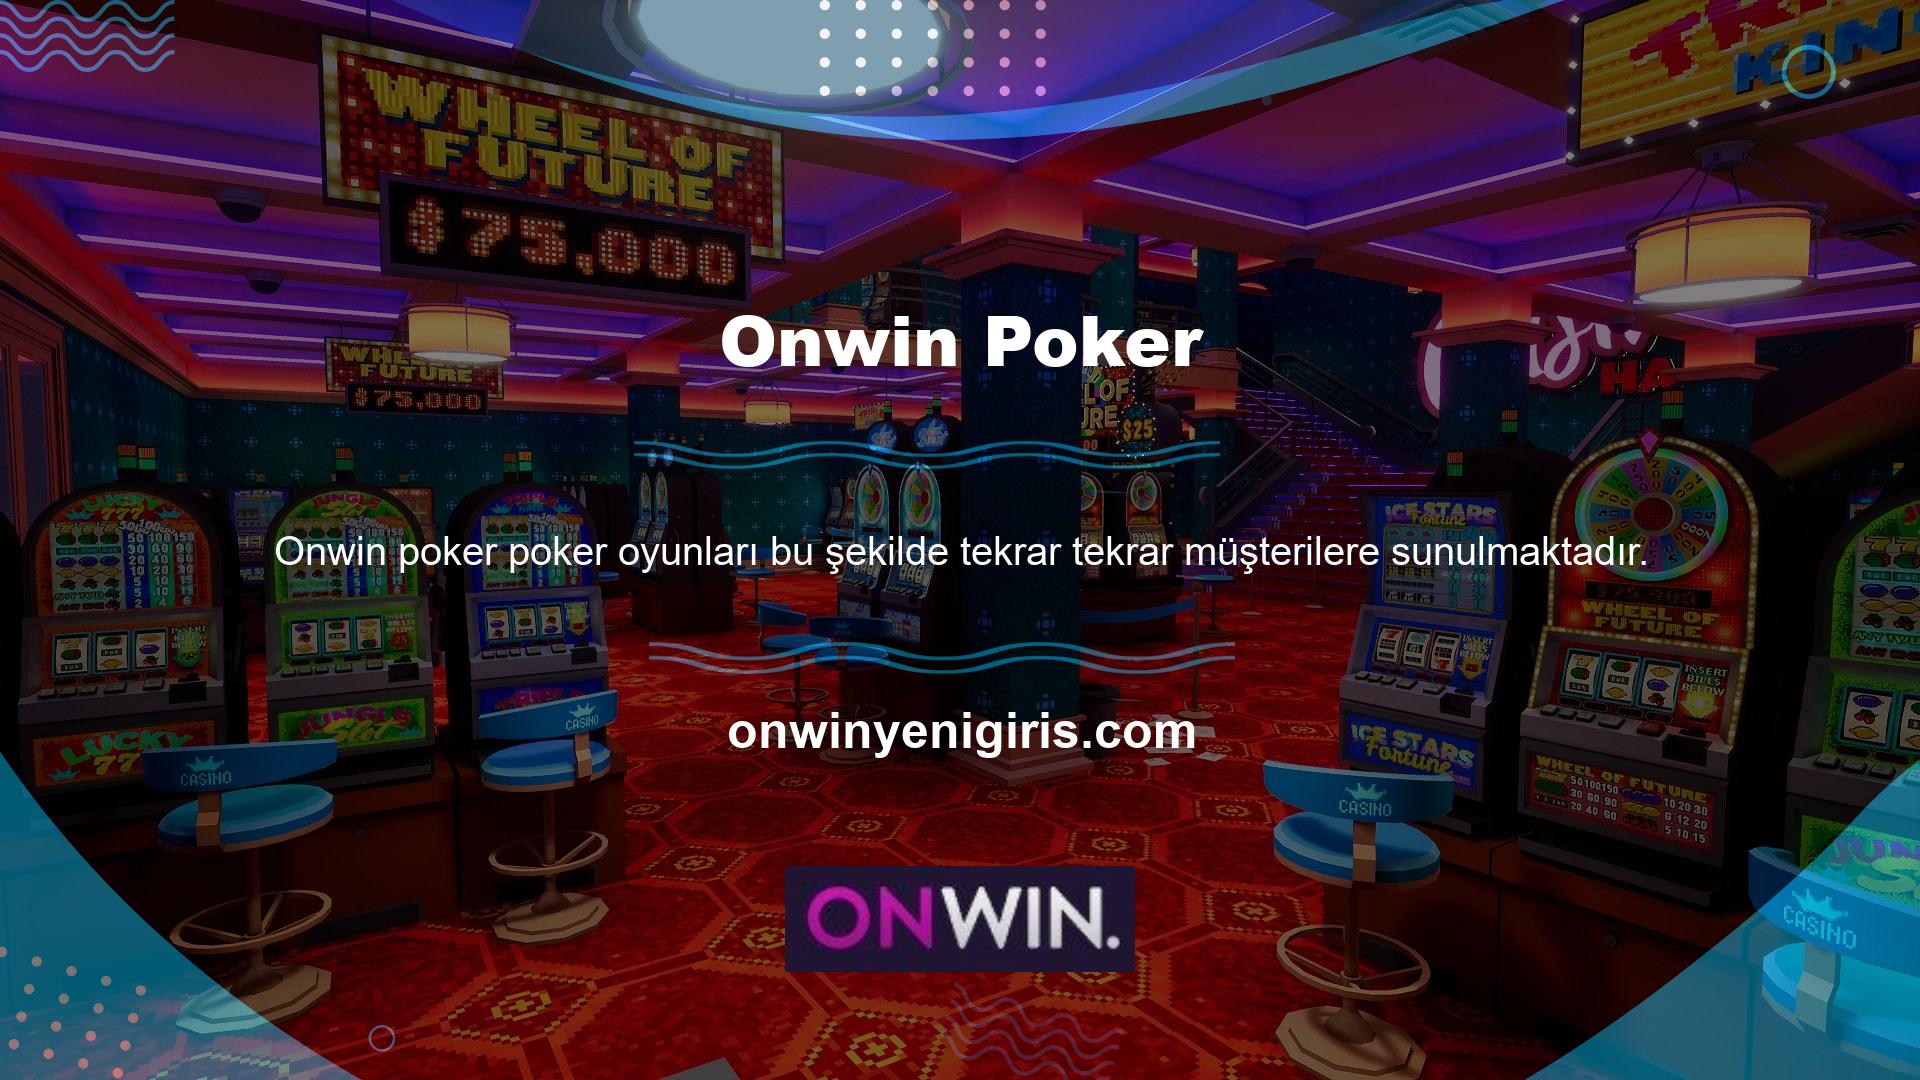 Onwin poker oyunlarından kazanç elde etmek için iki ana ticaret seçeneği vardır